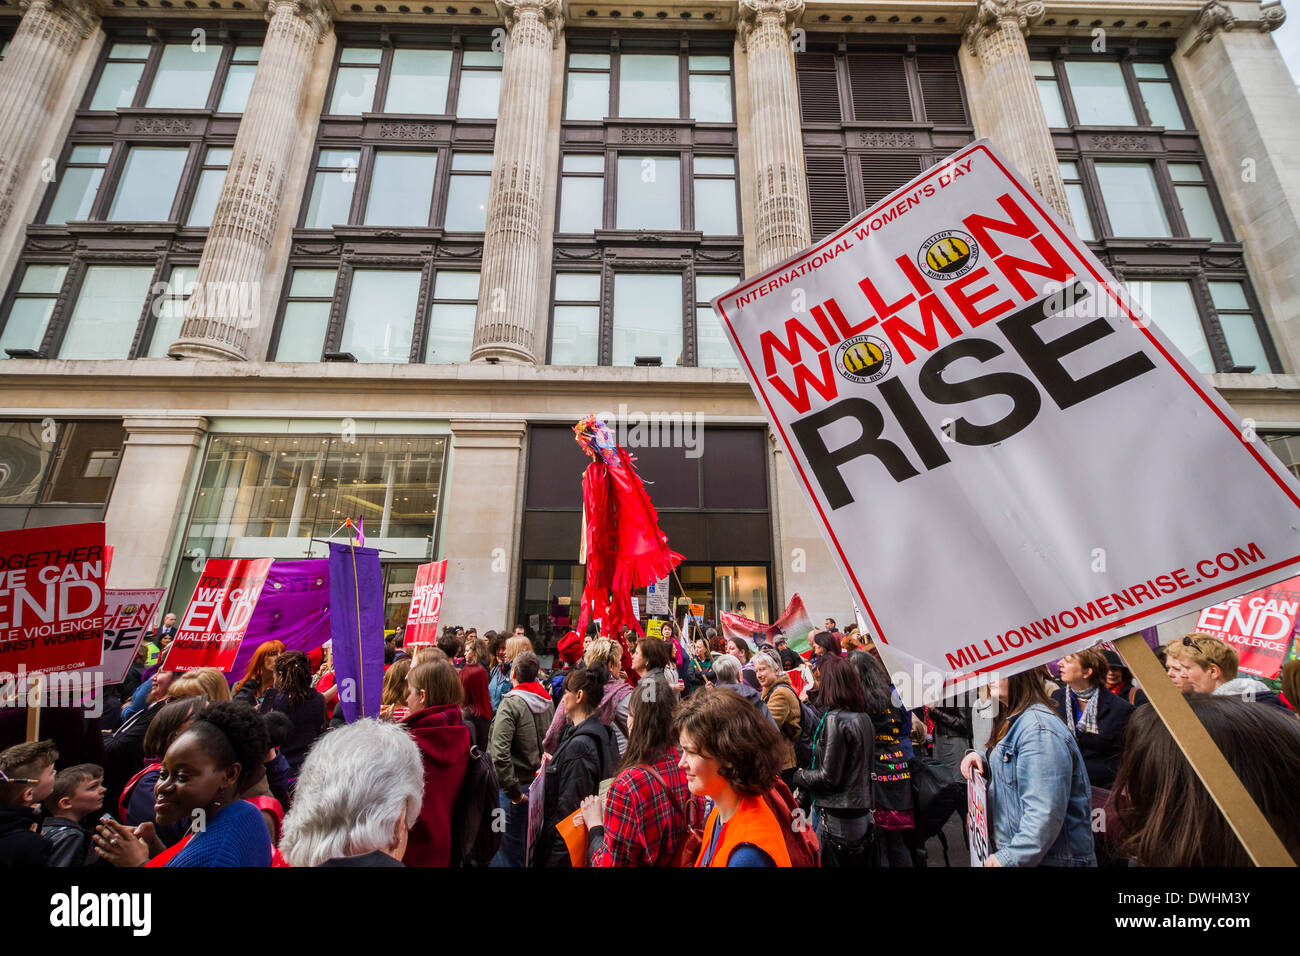 International Women's Day Million Women Rise March in London Stock Photo